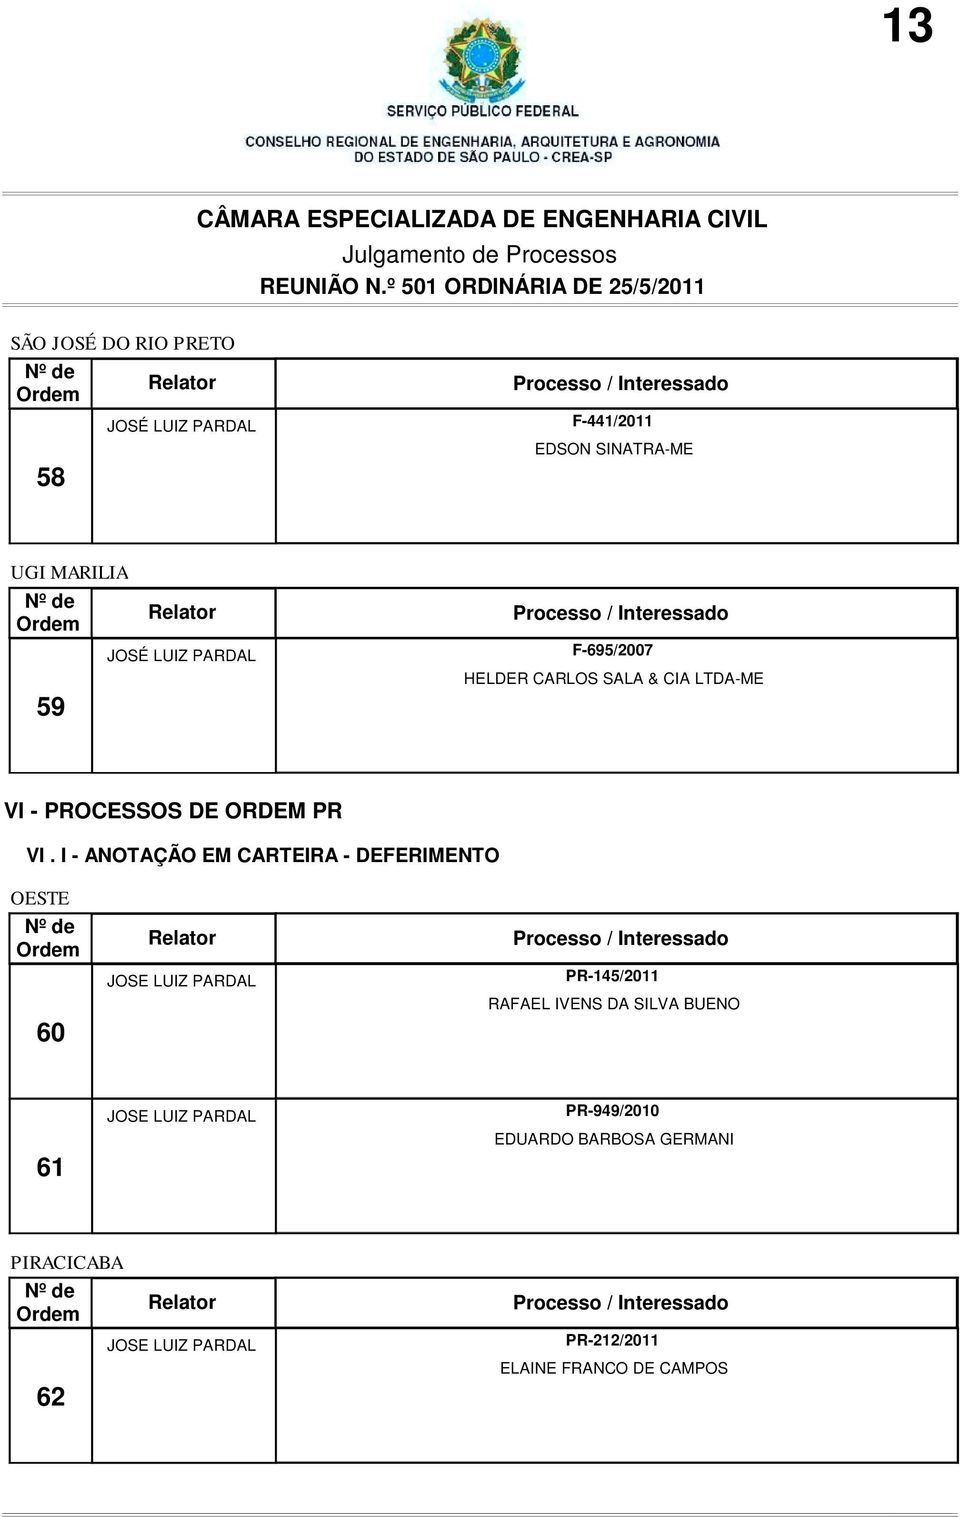 I - ANOTAÇÃO EM CARTEIRA - DEFERIMENTO OESTE 60 PR-145/2011 RAFAEL IVENS DA